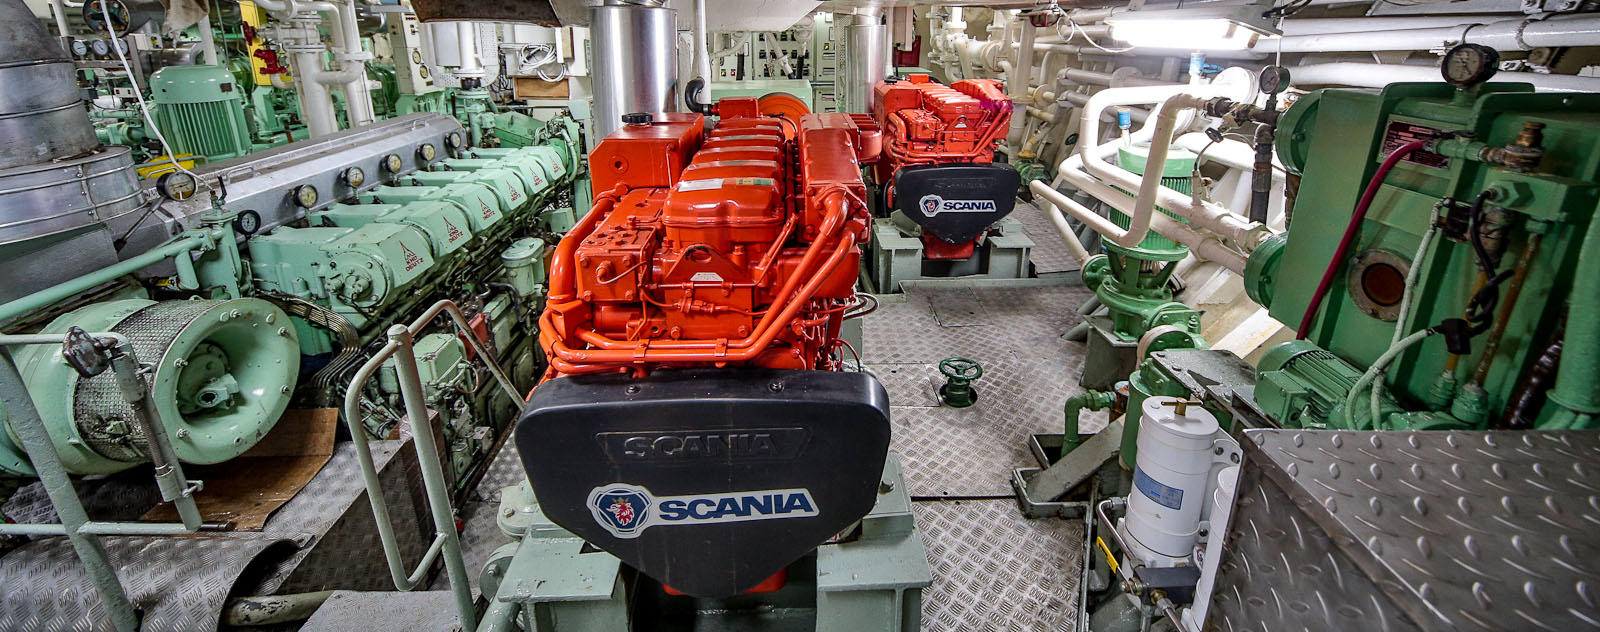 Scania exhibe motores marinos en puerto de Mar del Plata